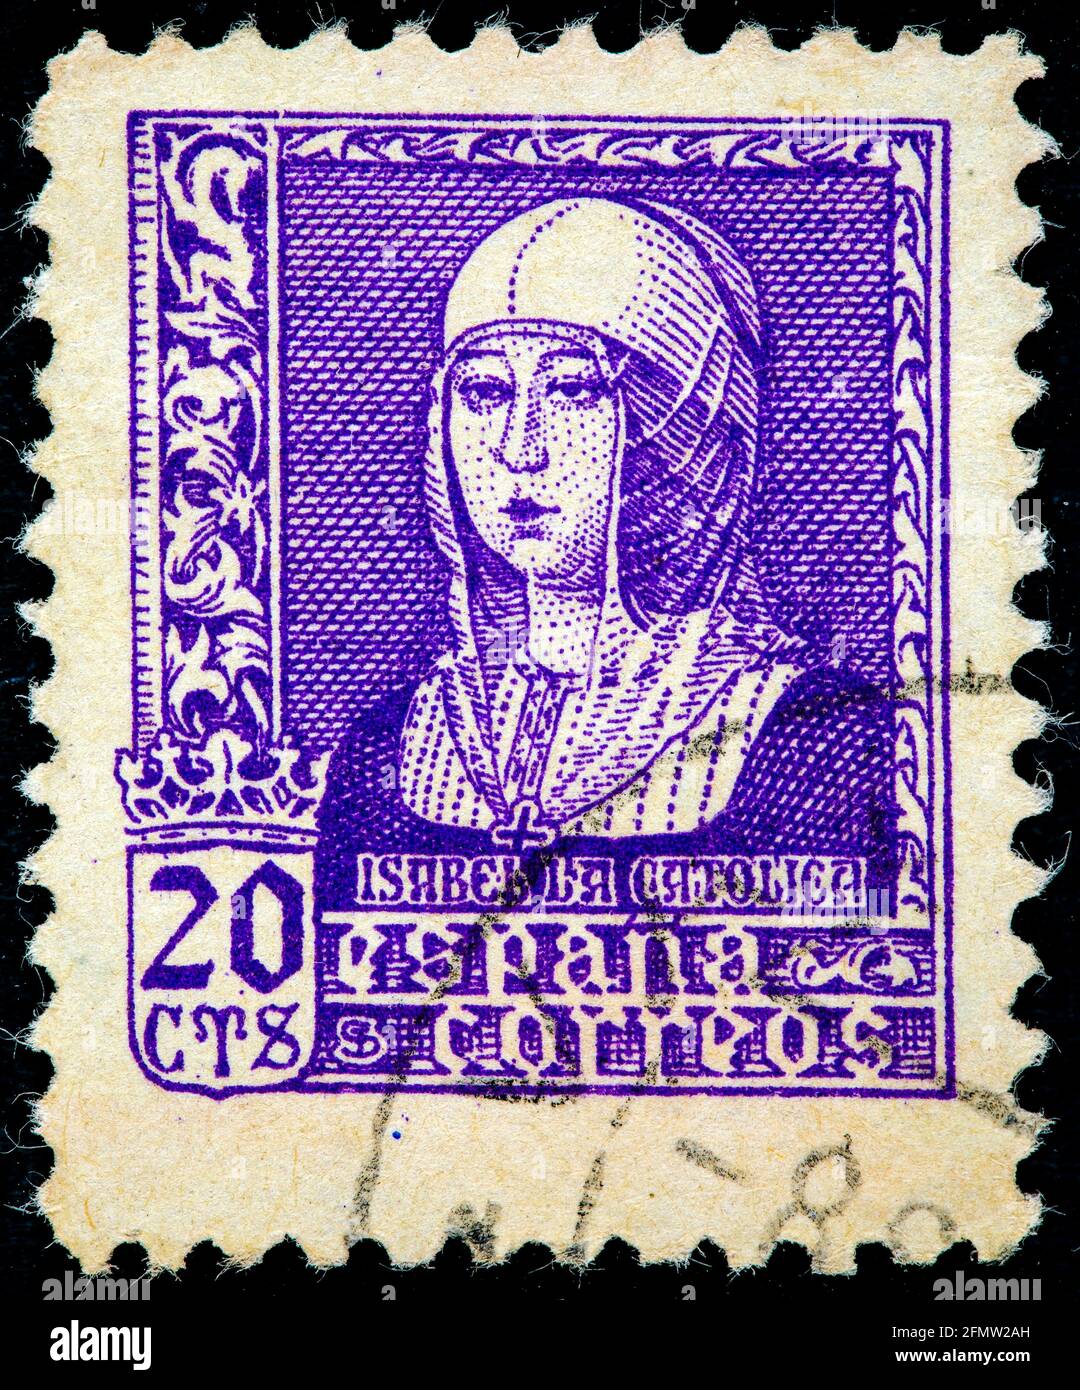 ESPAGNE - VERS 1937: Un timbre imprimé en Espagne montre la reine Isabella I de Castille (1451-1504), également connu sous le nom d'Isabella le catholique, série, vers 1937 Banque D'Images